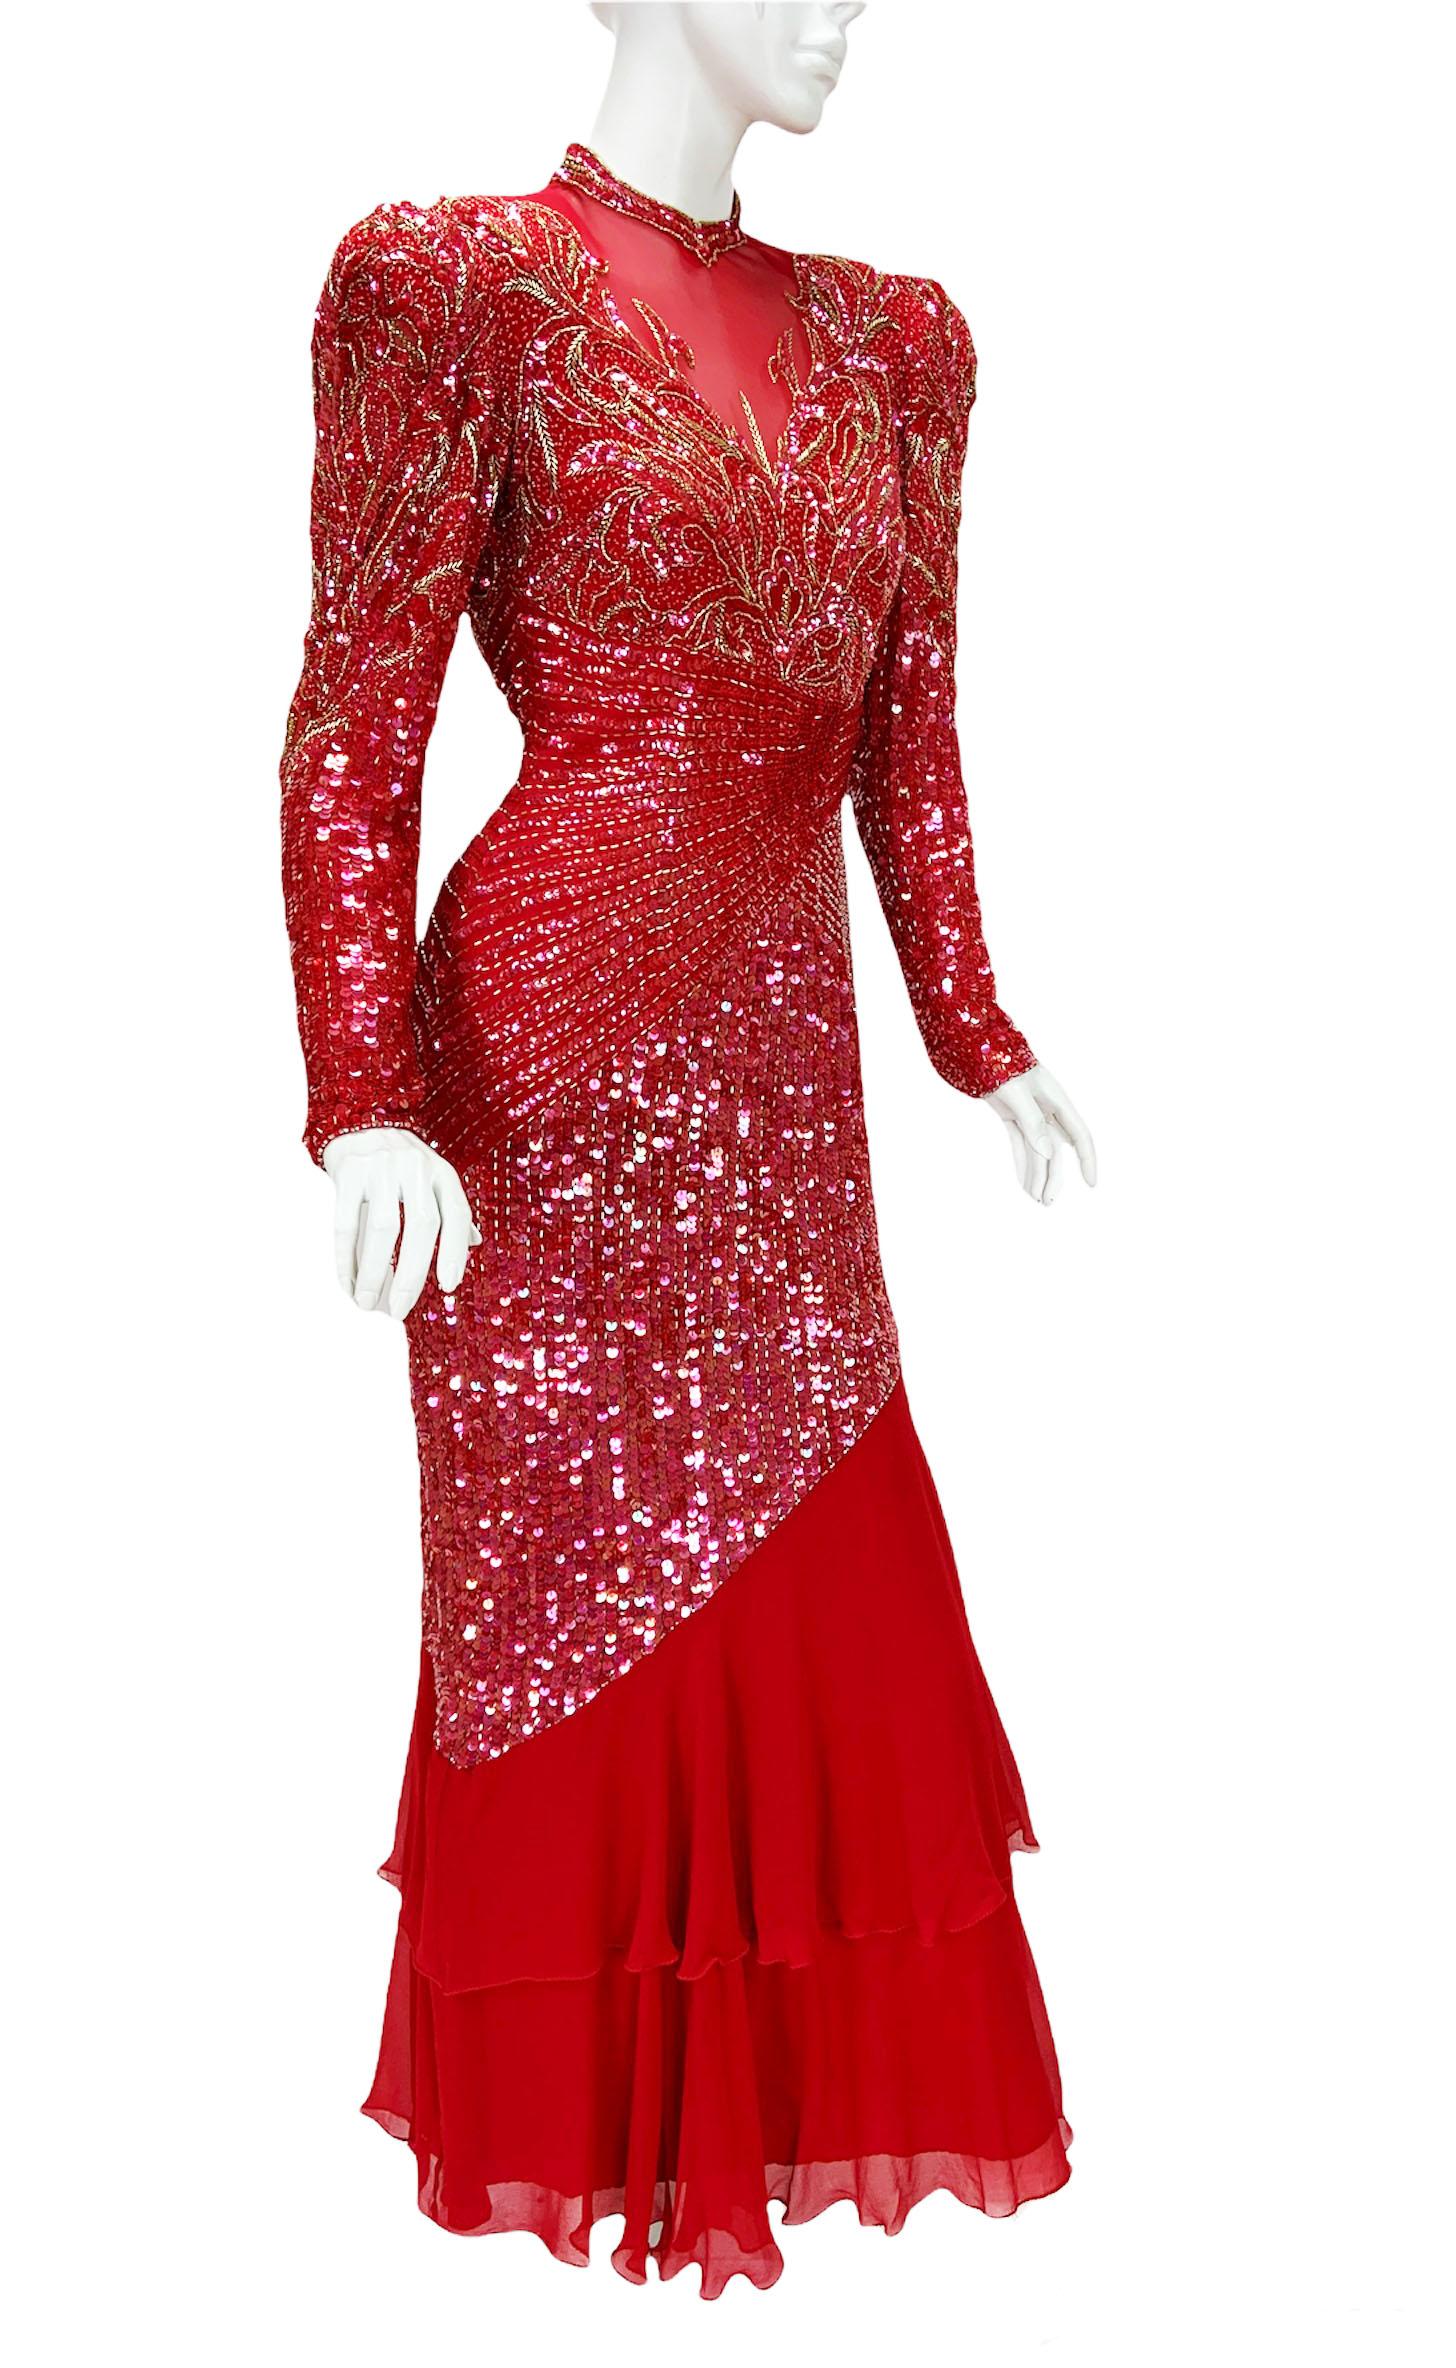 Vintage Bob Mackie Boutique 1980er Jahre Vollständig verschönertes rotes langes Kleid
Size Label Missing - Bitte überprüfen Sie die Maßangaben
100% Seide, fein geperlt mit goldenen und roten Perlen und roten Pailletten. Doppelter Rock, gepolsterte